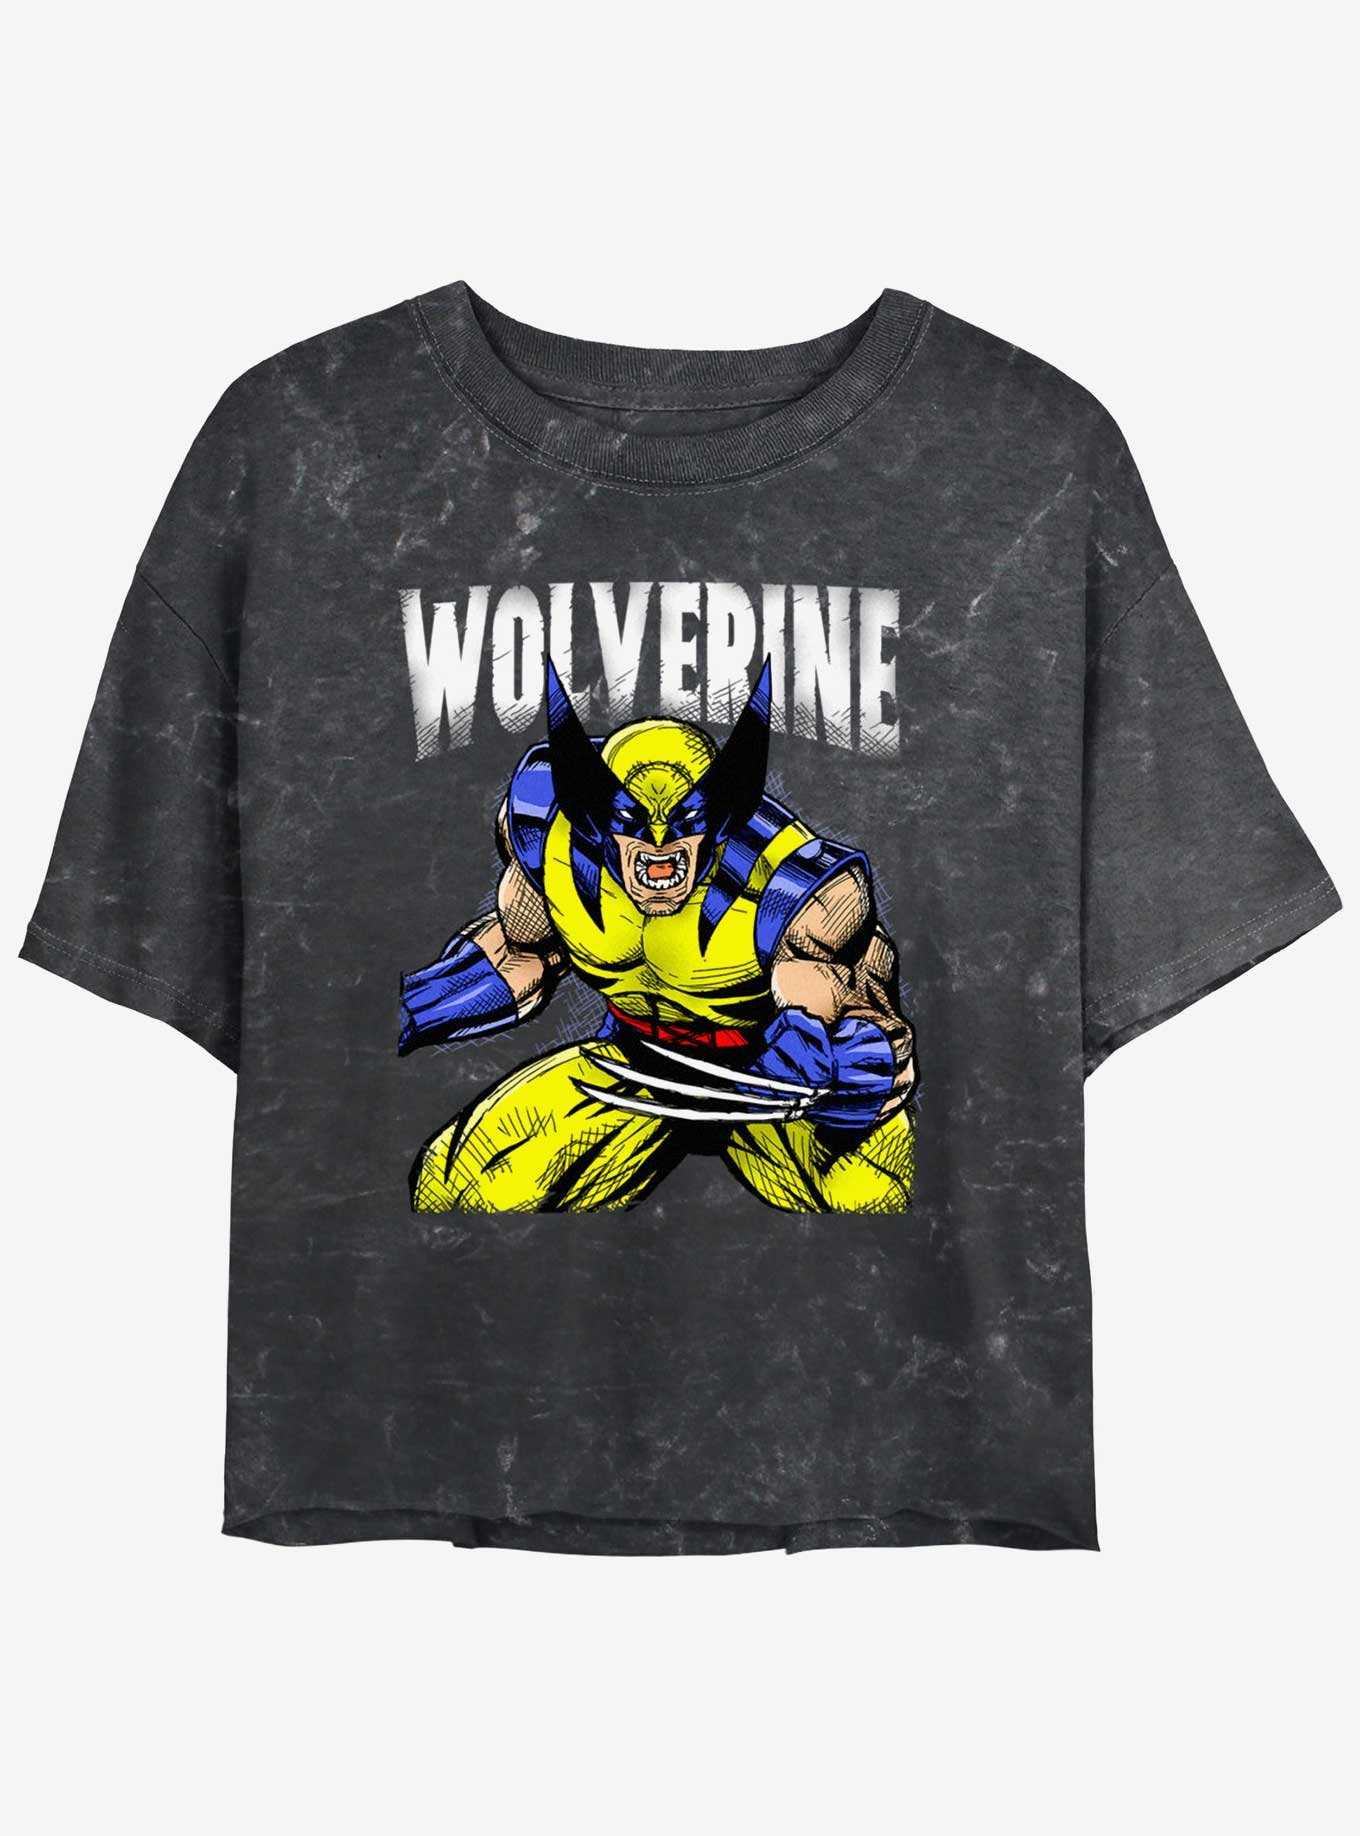 Wolverine Rage On Girls Mineral Wash Crop T-Shirt, , hi-res